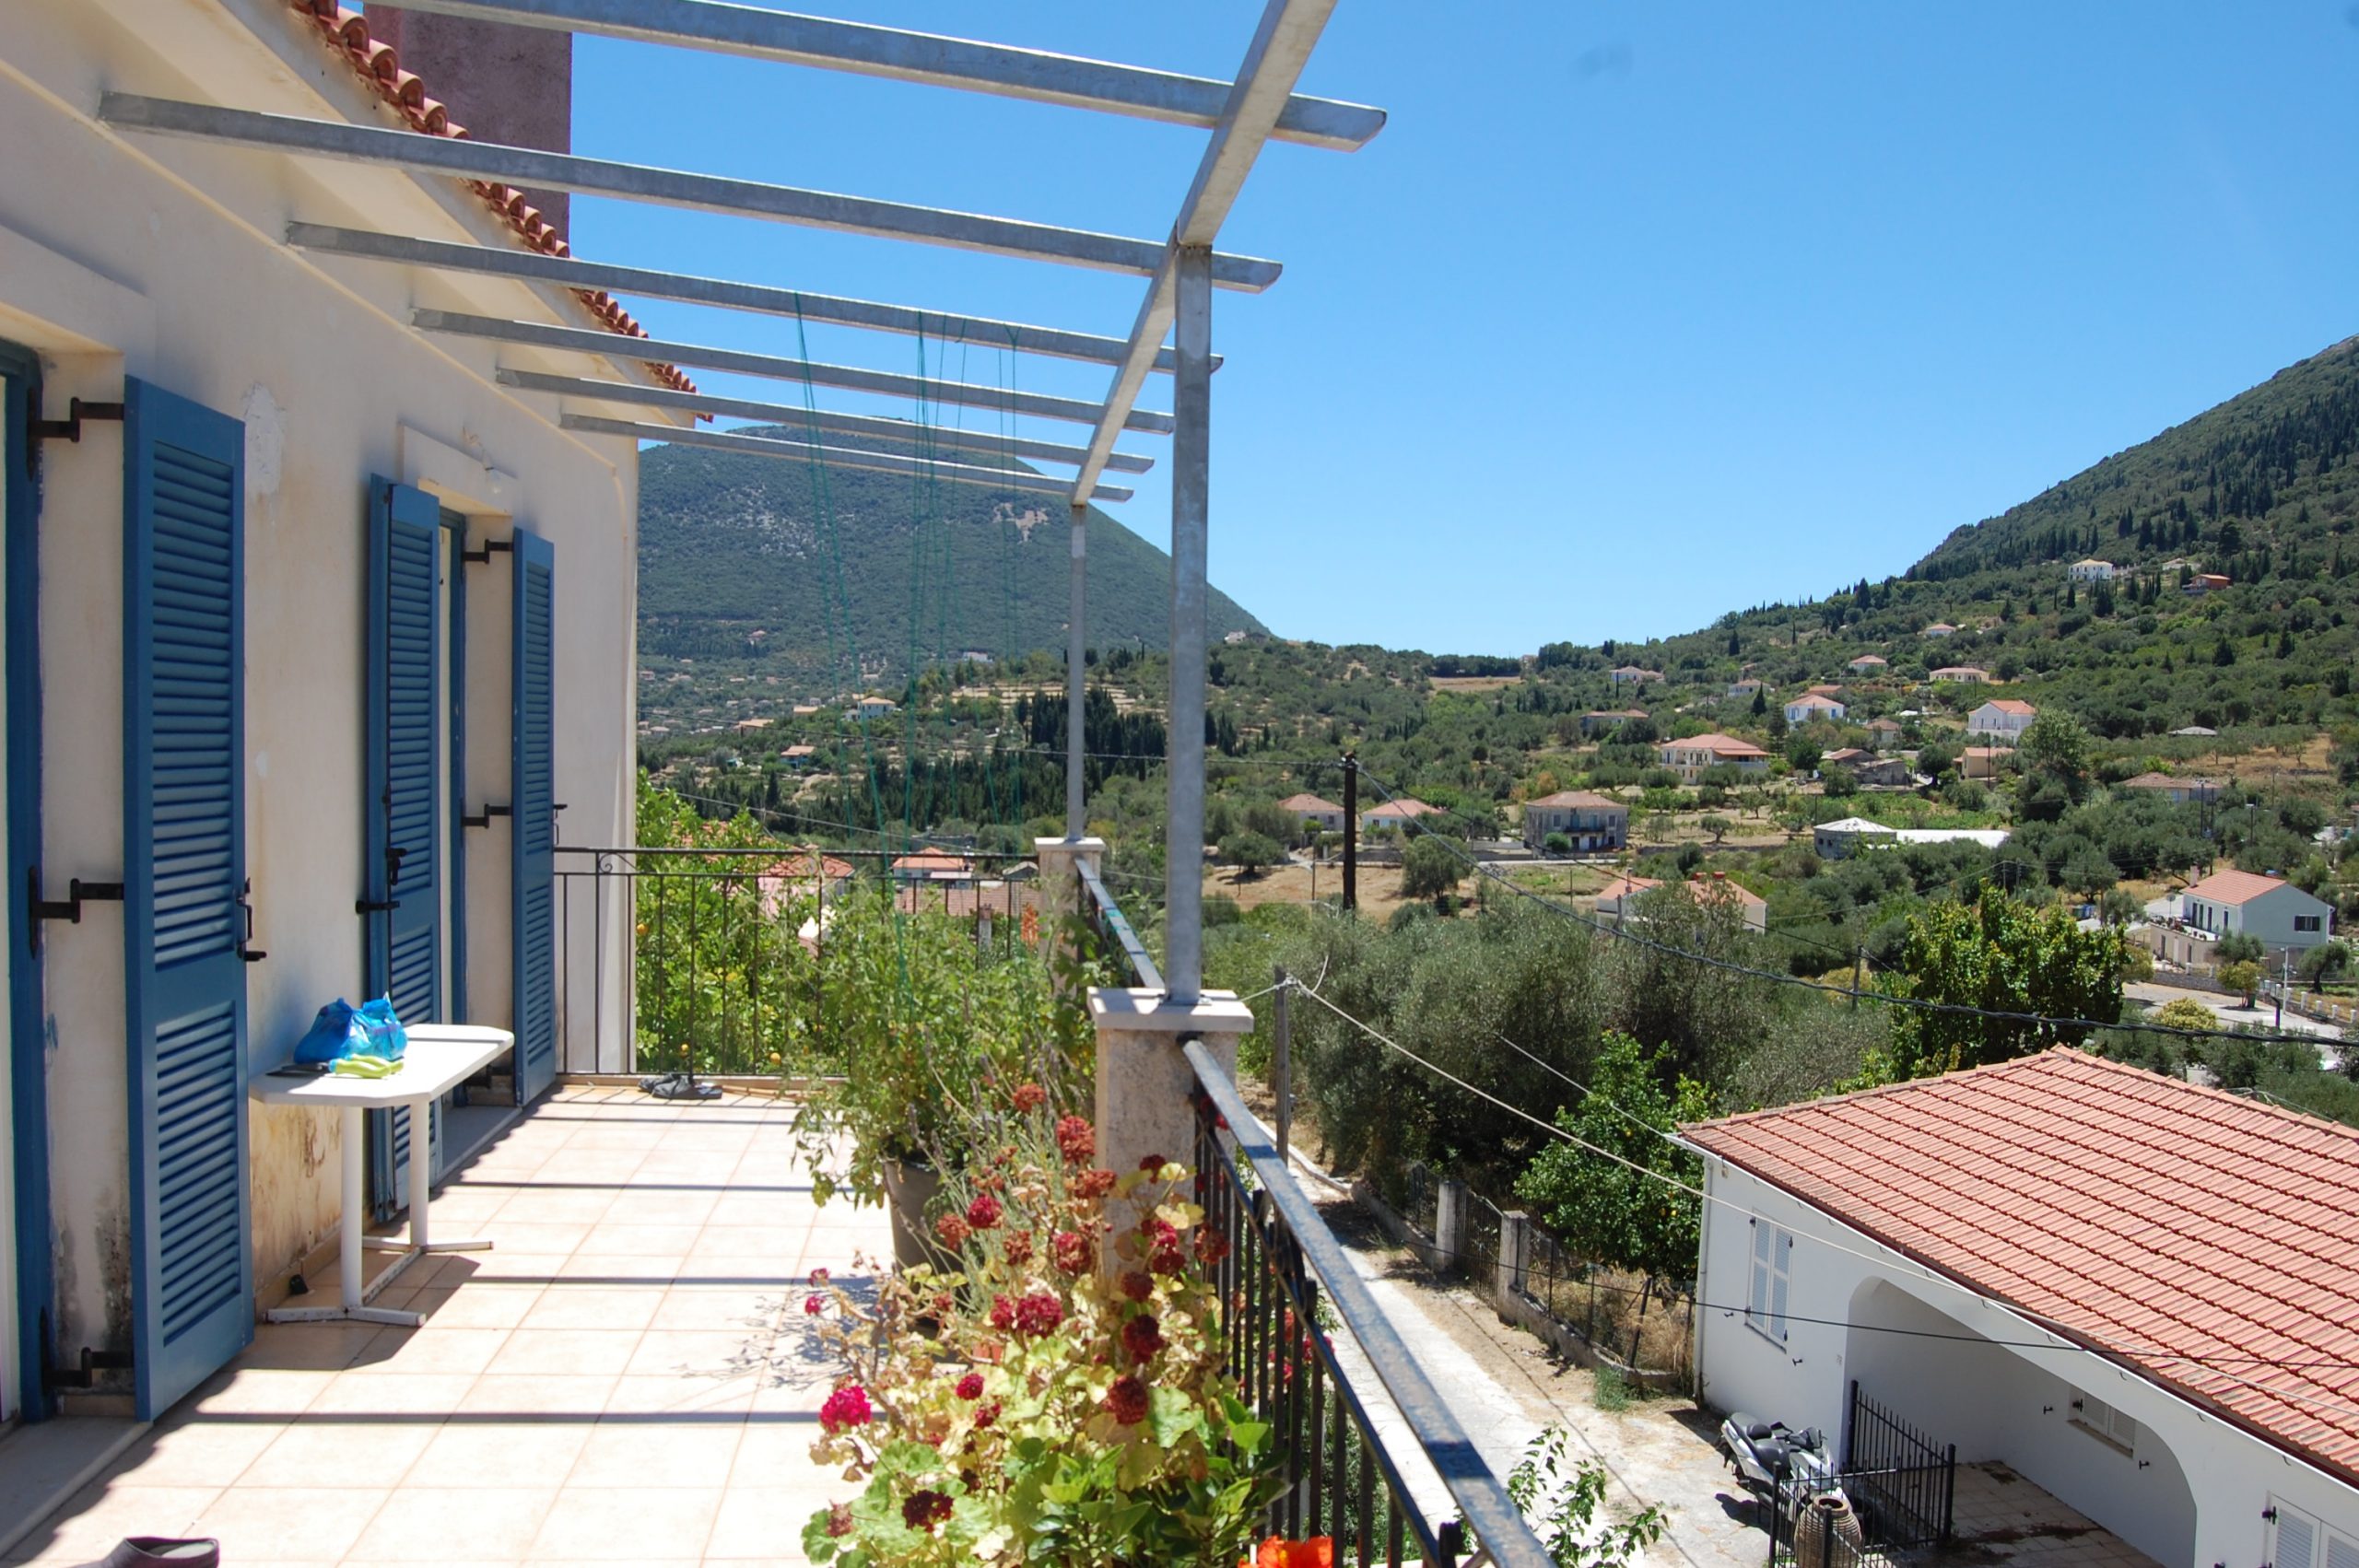 Εξωτερικό μπαλκόνι προς πώληση Ιφάκα Ελλάδα Πλατρειθιάς